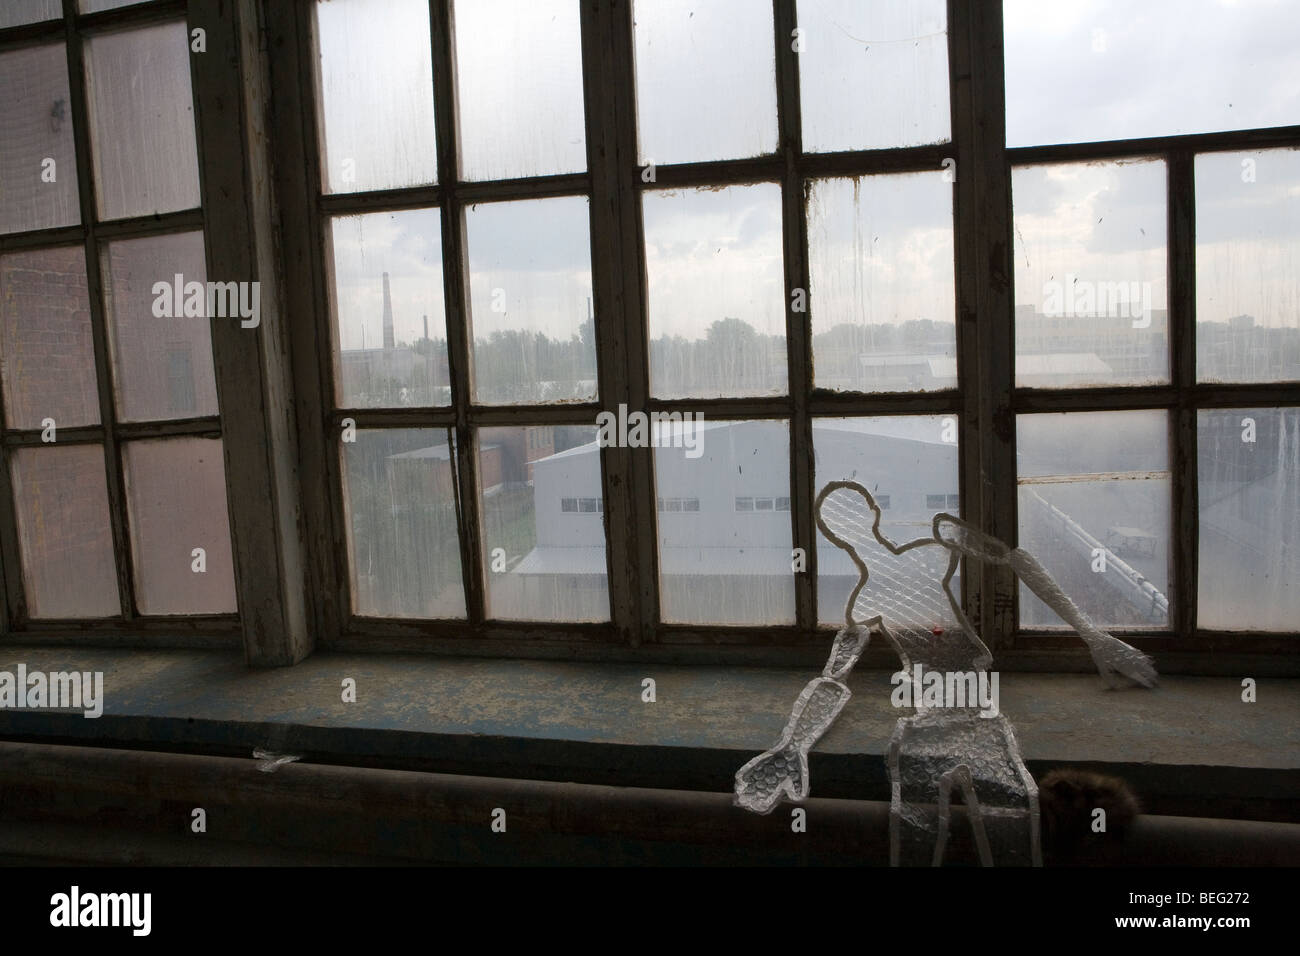 Synthetische kabel Modell der menschlichen Abbildung auf der Fensterbank der verlassenen Fabrik Stockfoto